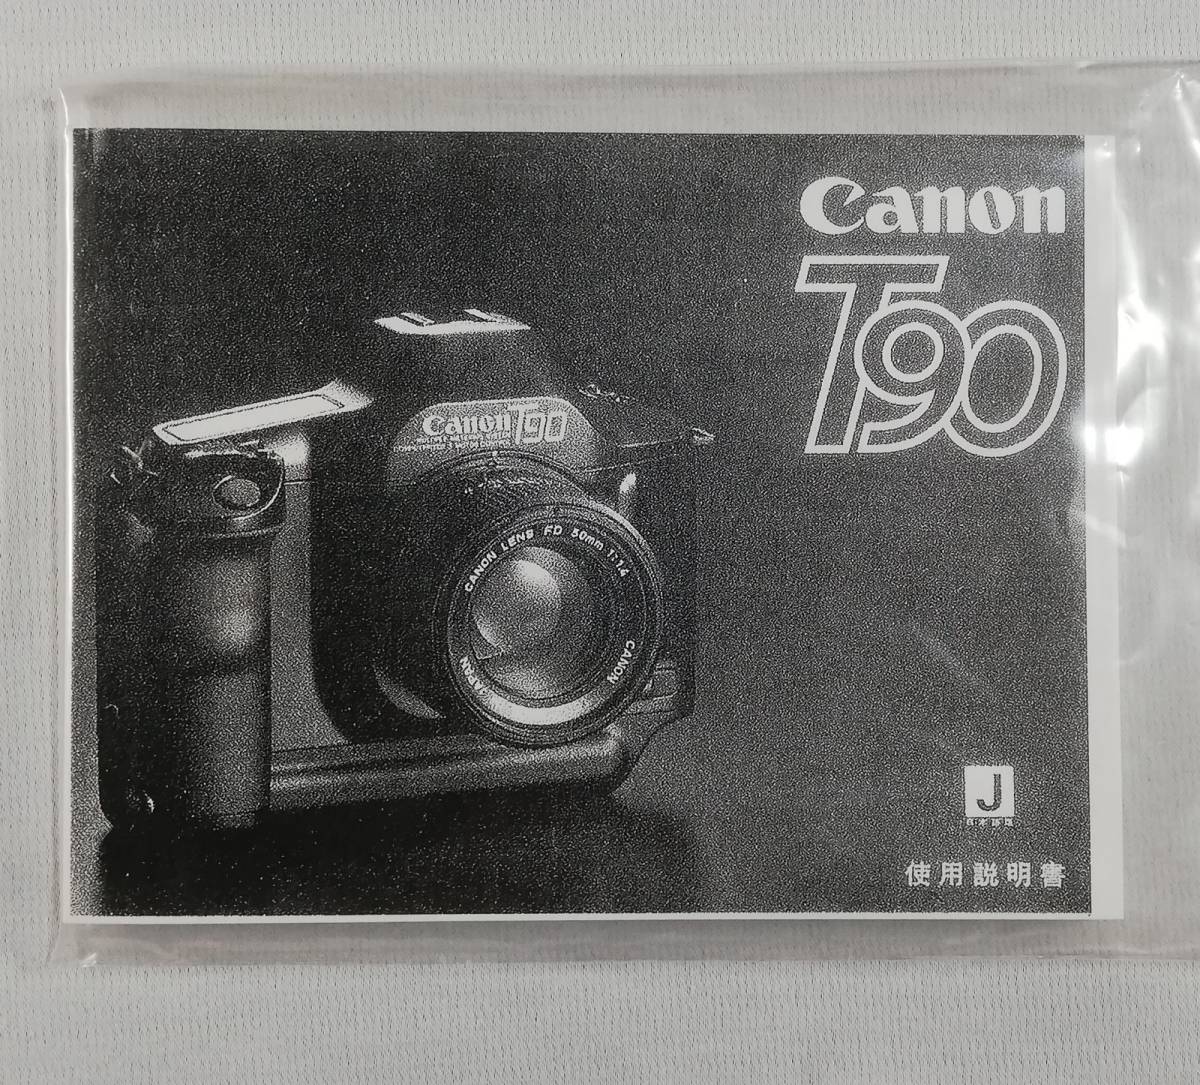  новый товар . производства версия * Canon Canon T90 инструкция *